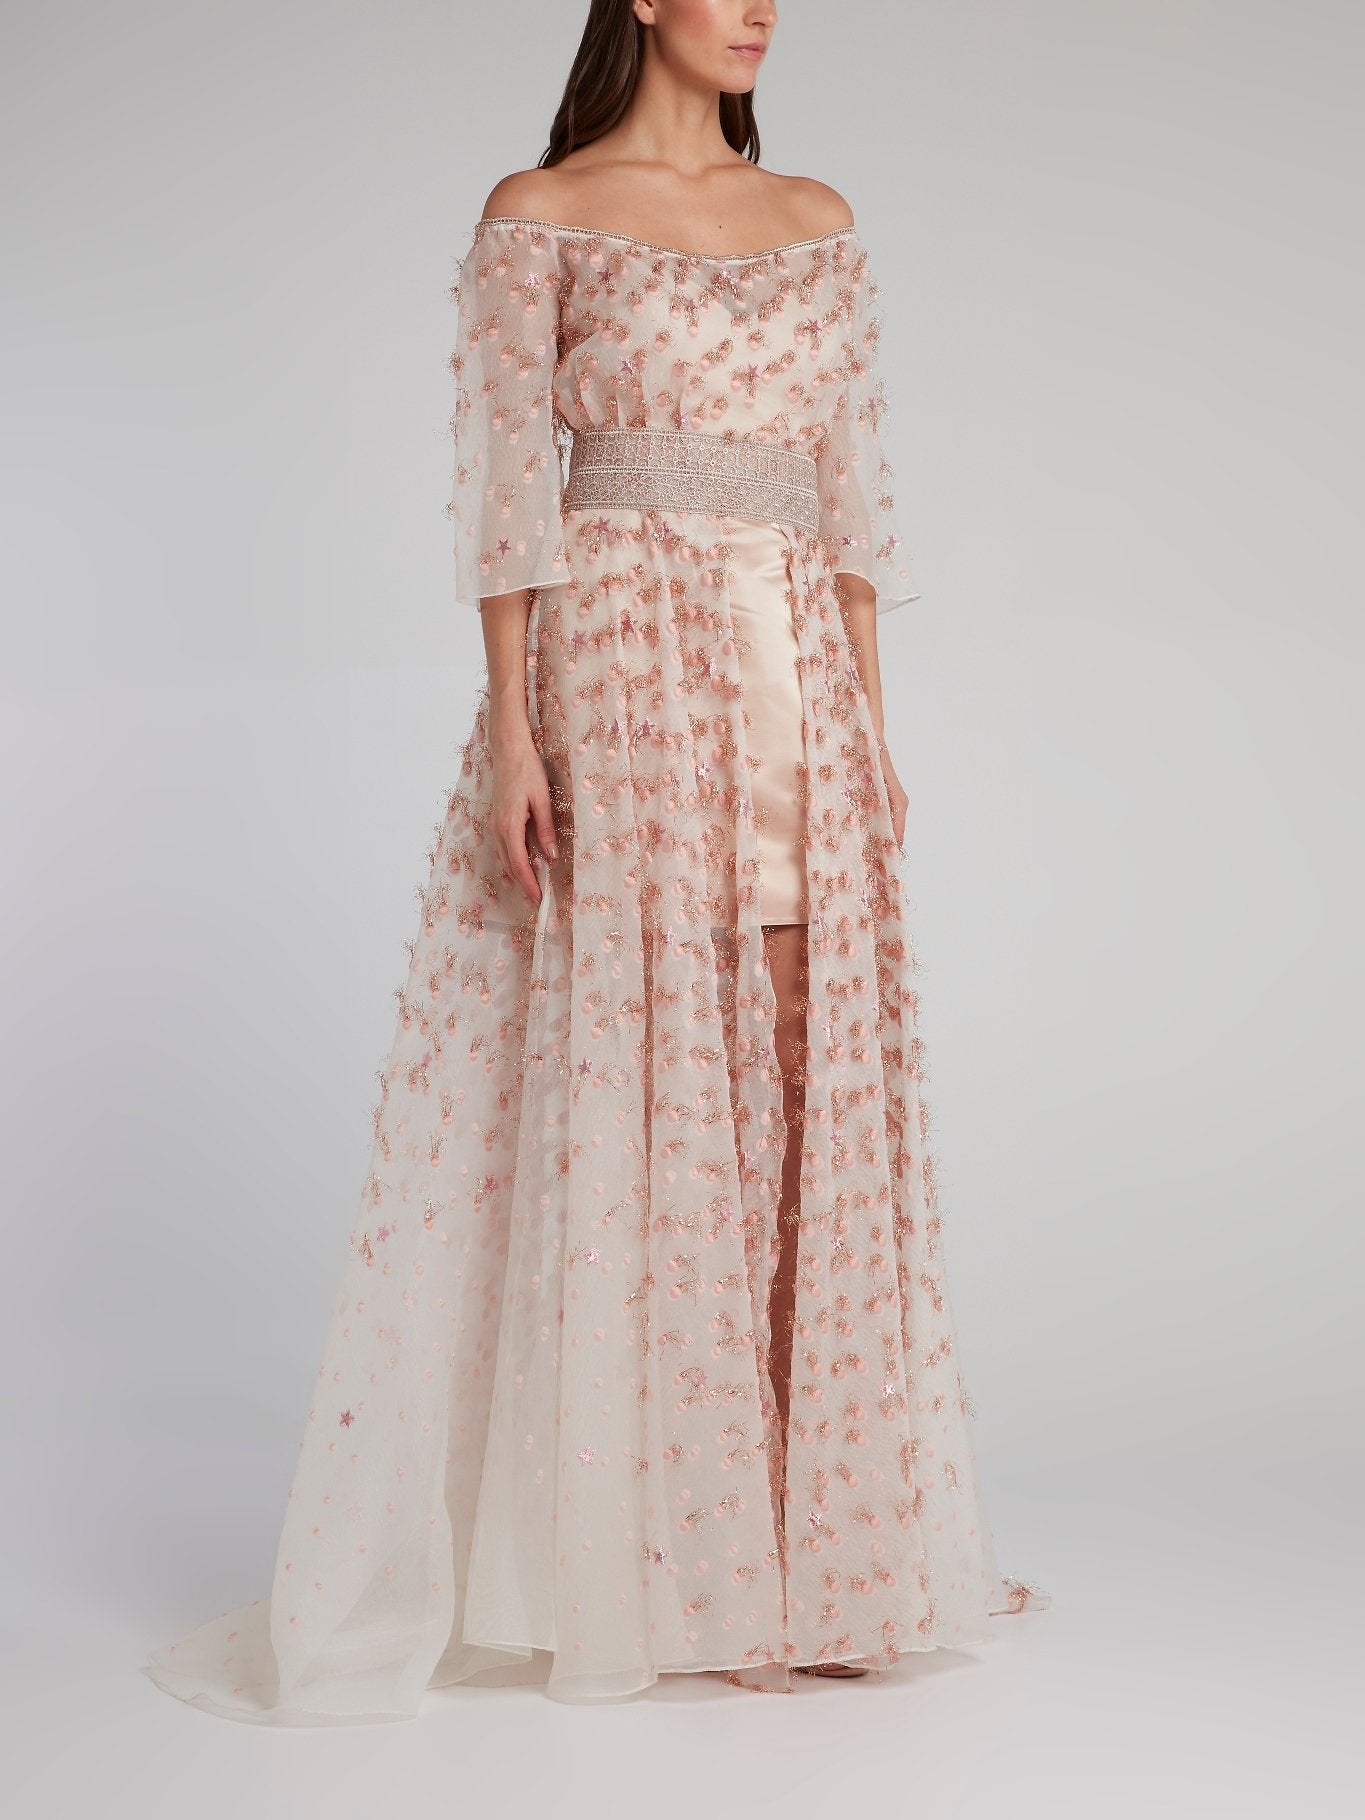 Pink Off-The-Shoulder Embellished Overlay Dress